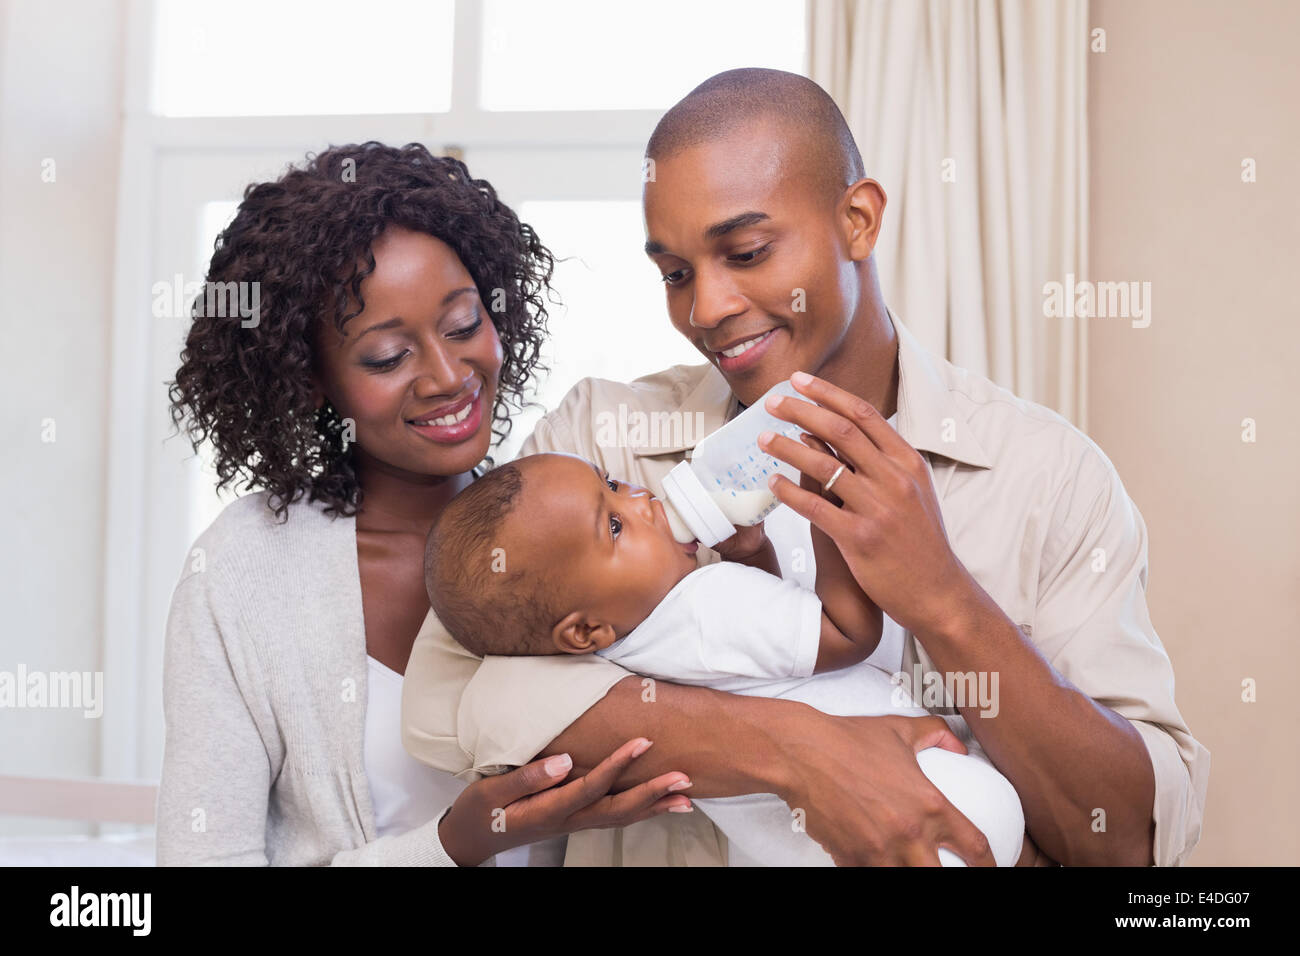 Felices padres alimentar a su bebé un biberón Foto de stock